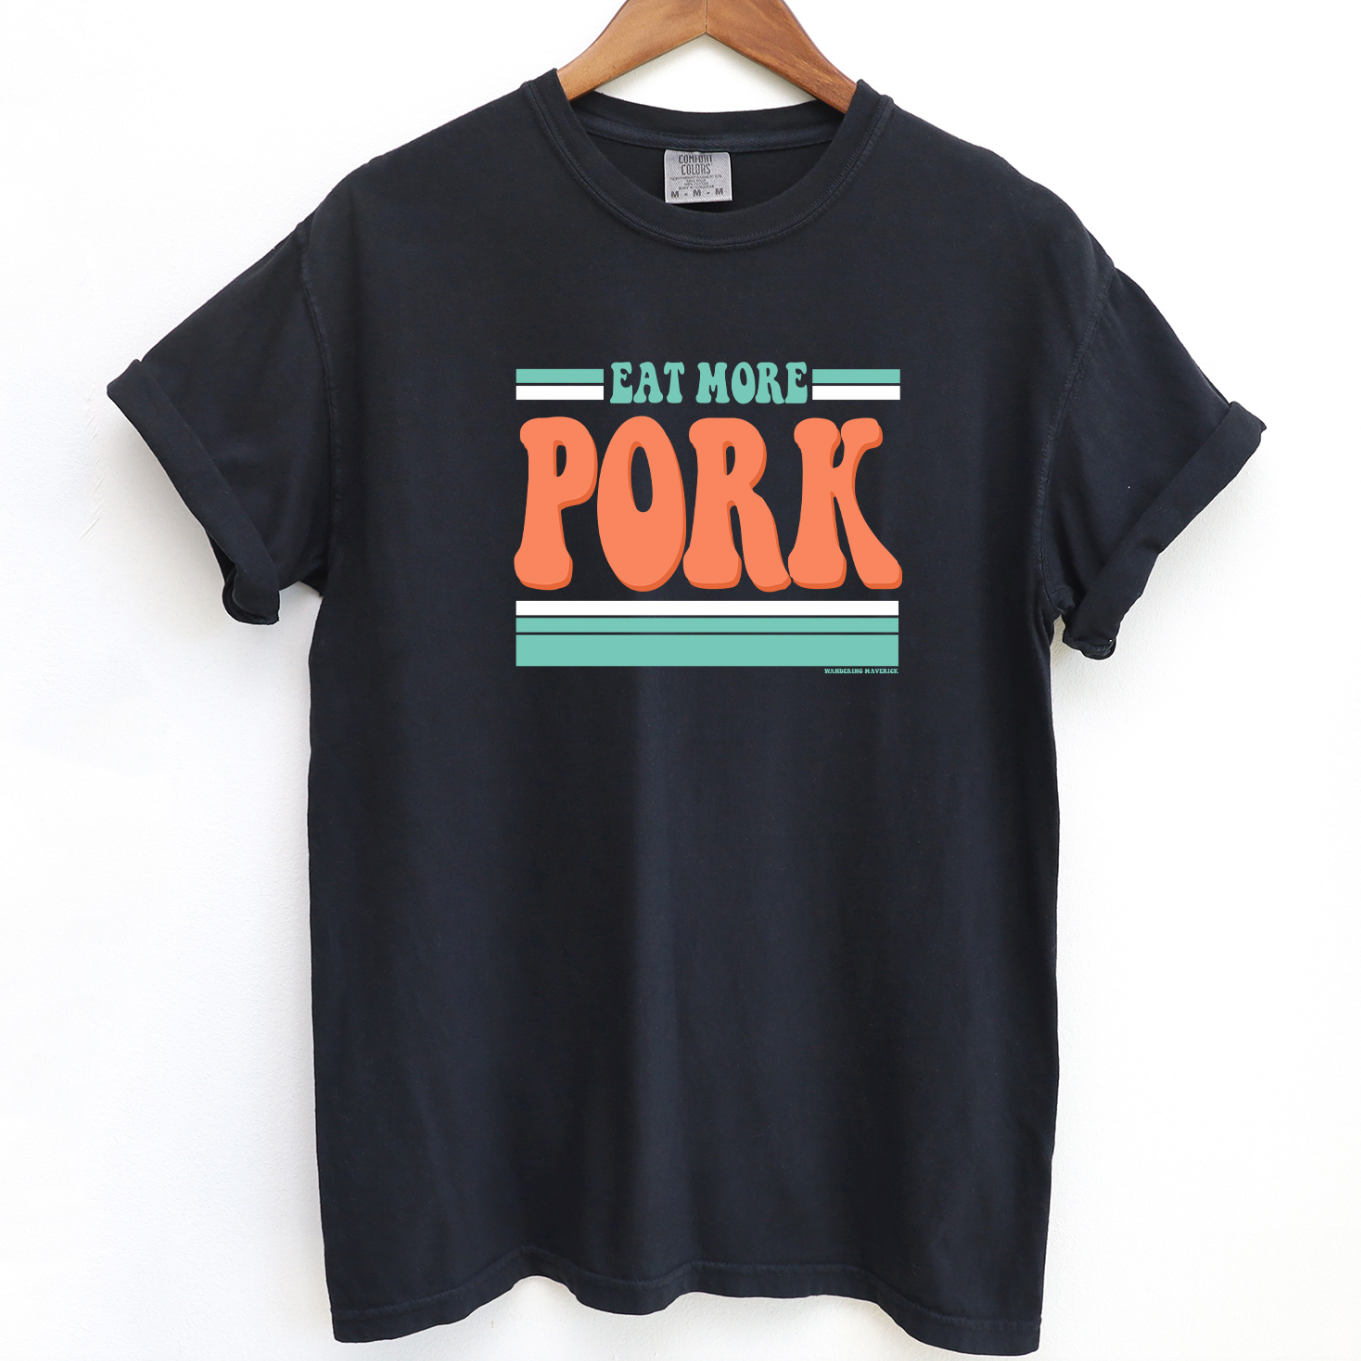 Eat More Pork ComfortWash/ComfortColor T-Shirt (S-4XL) - Multiple Colors!